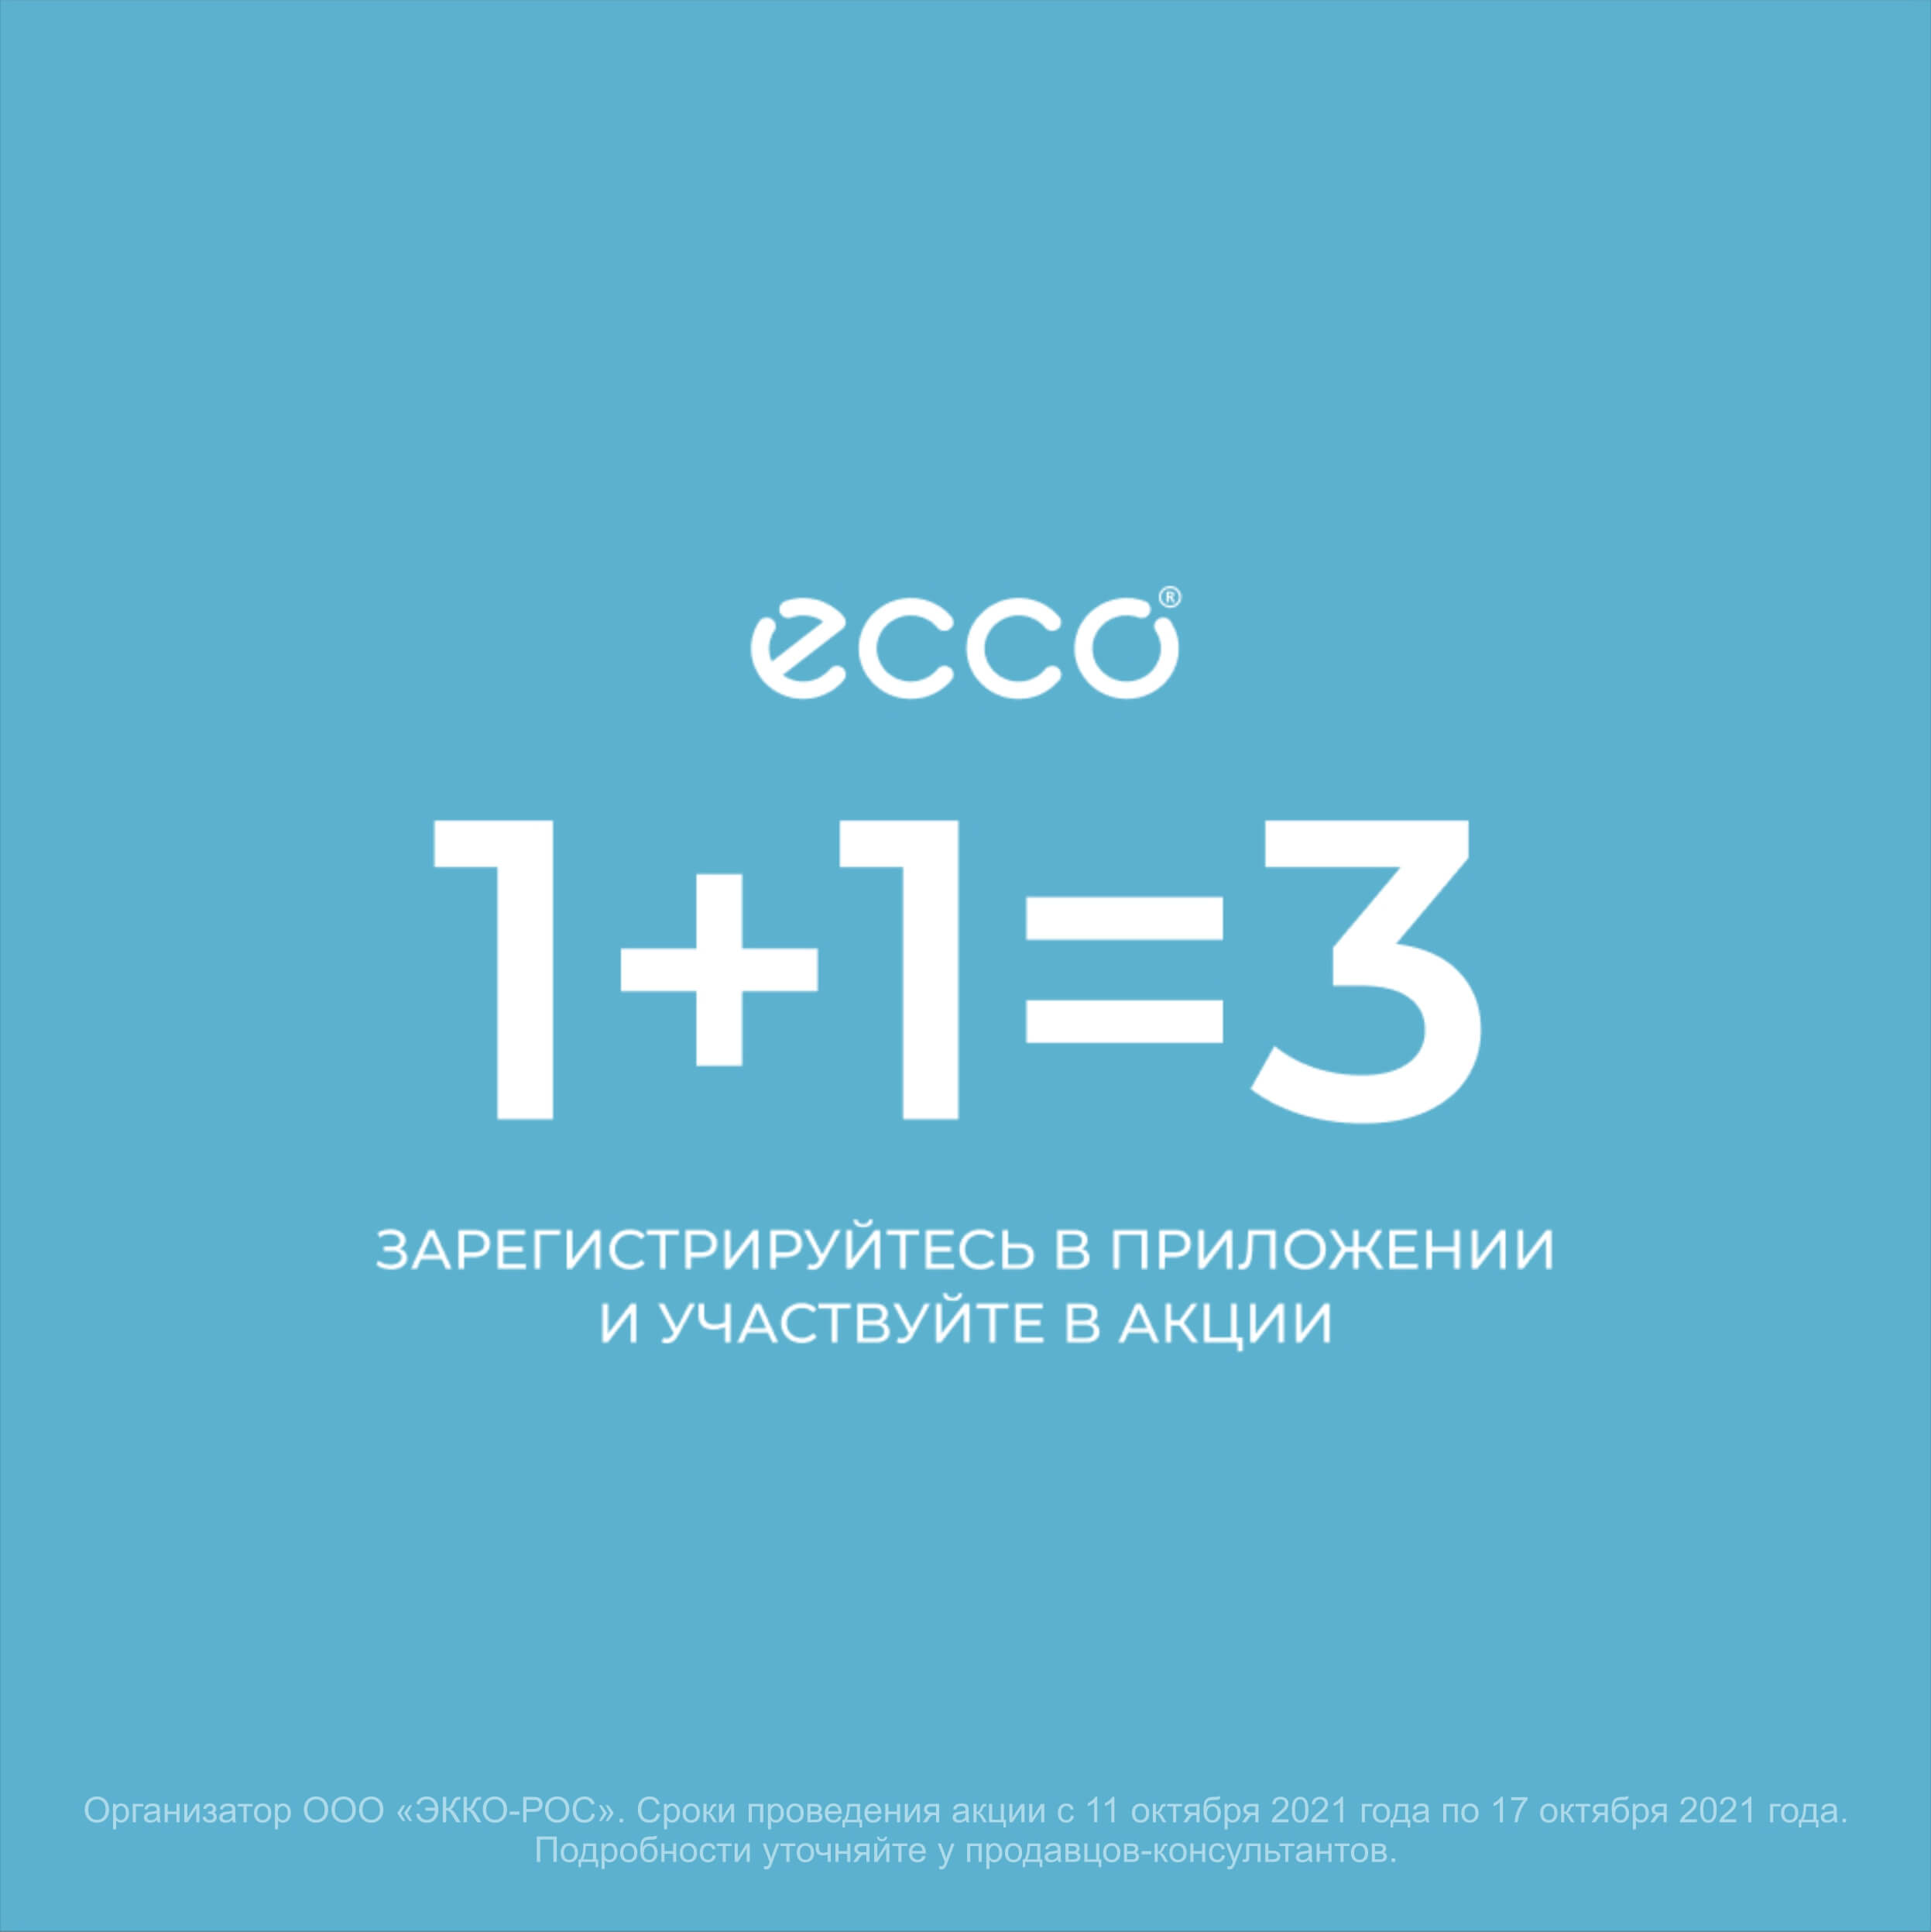 1+1=3 в ECCO